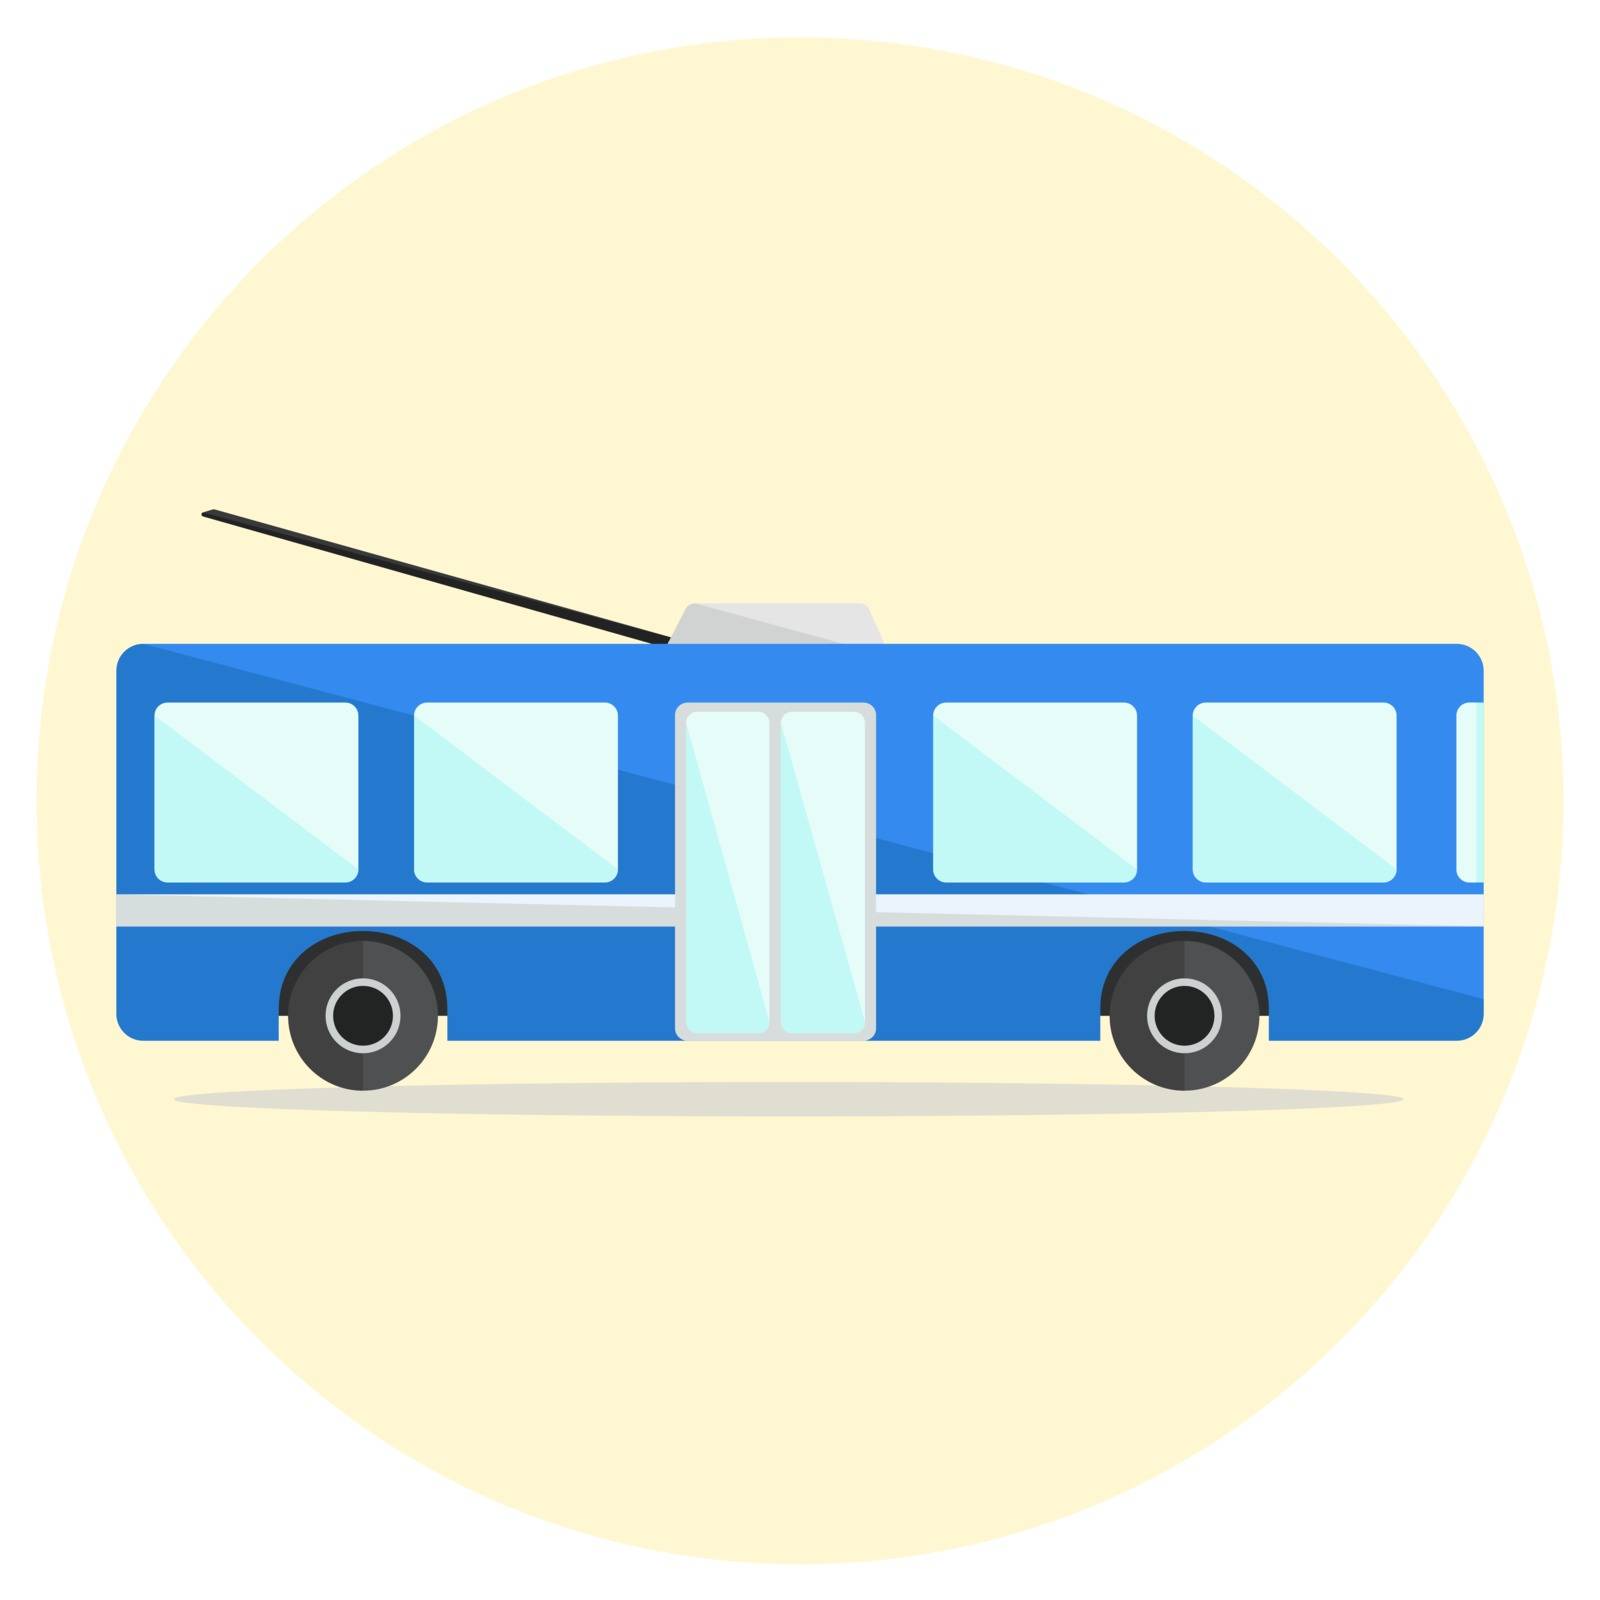 Cute colorful flat trolley bus icon by tatahnka